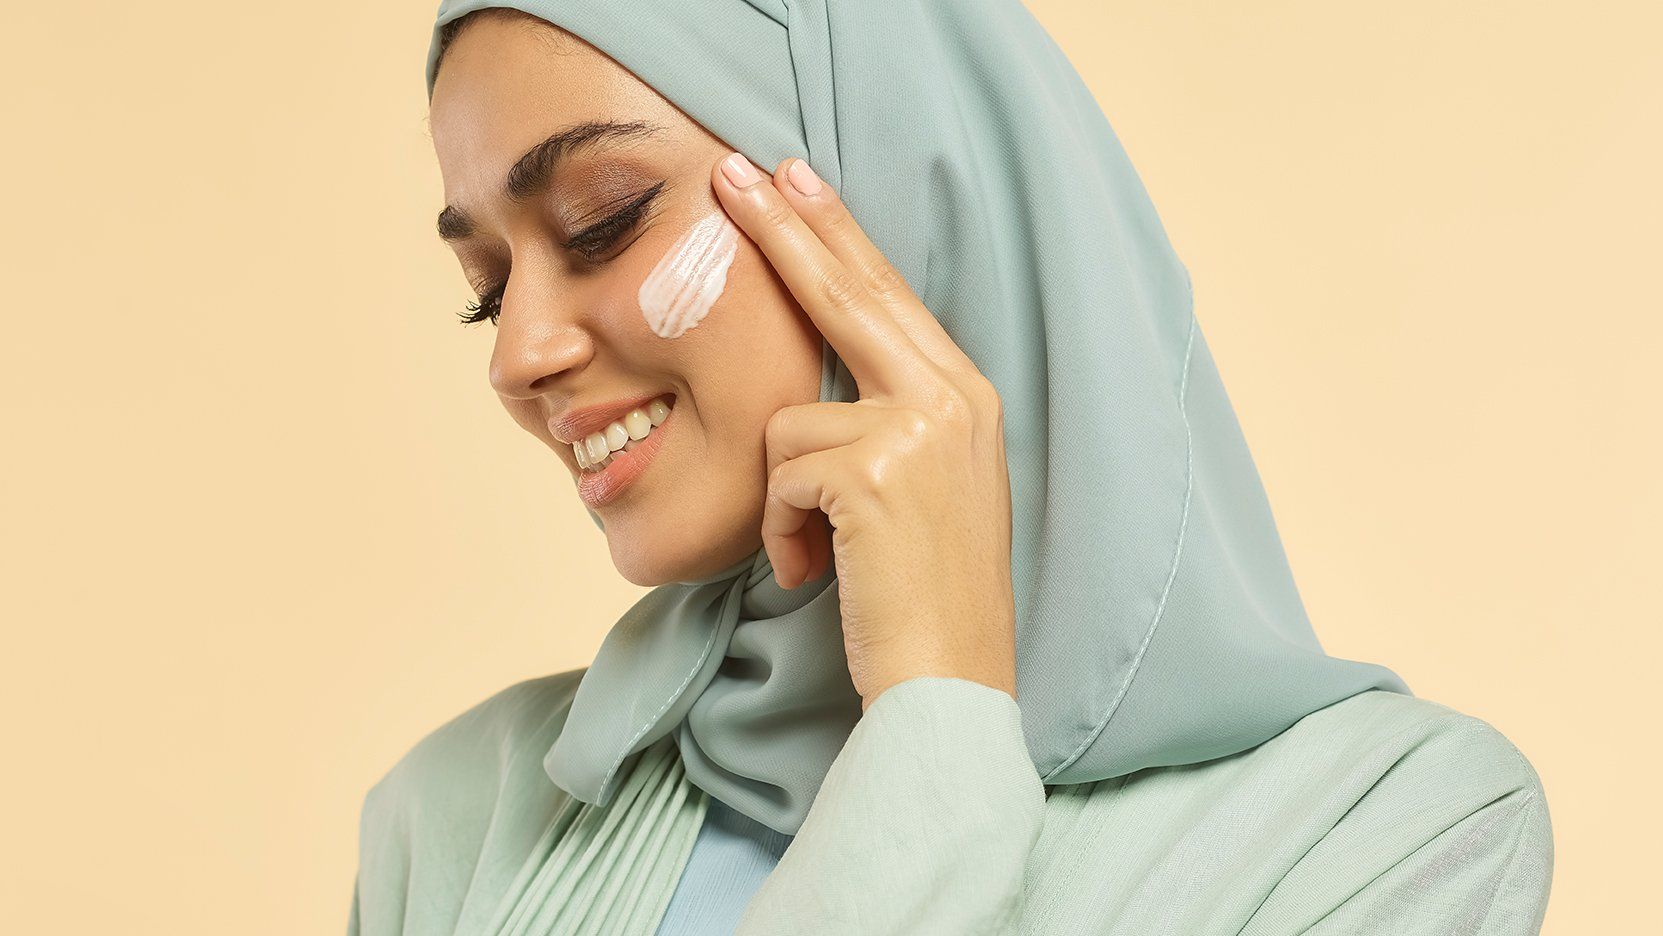 Skin care in Ramadan
